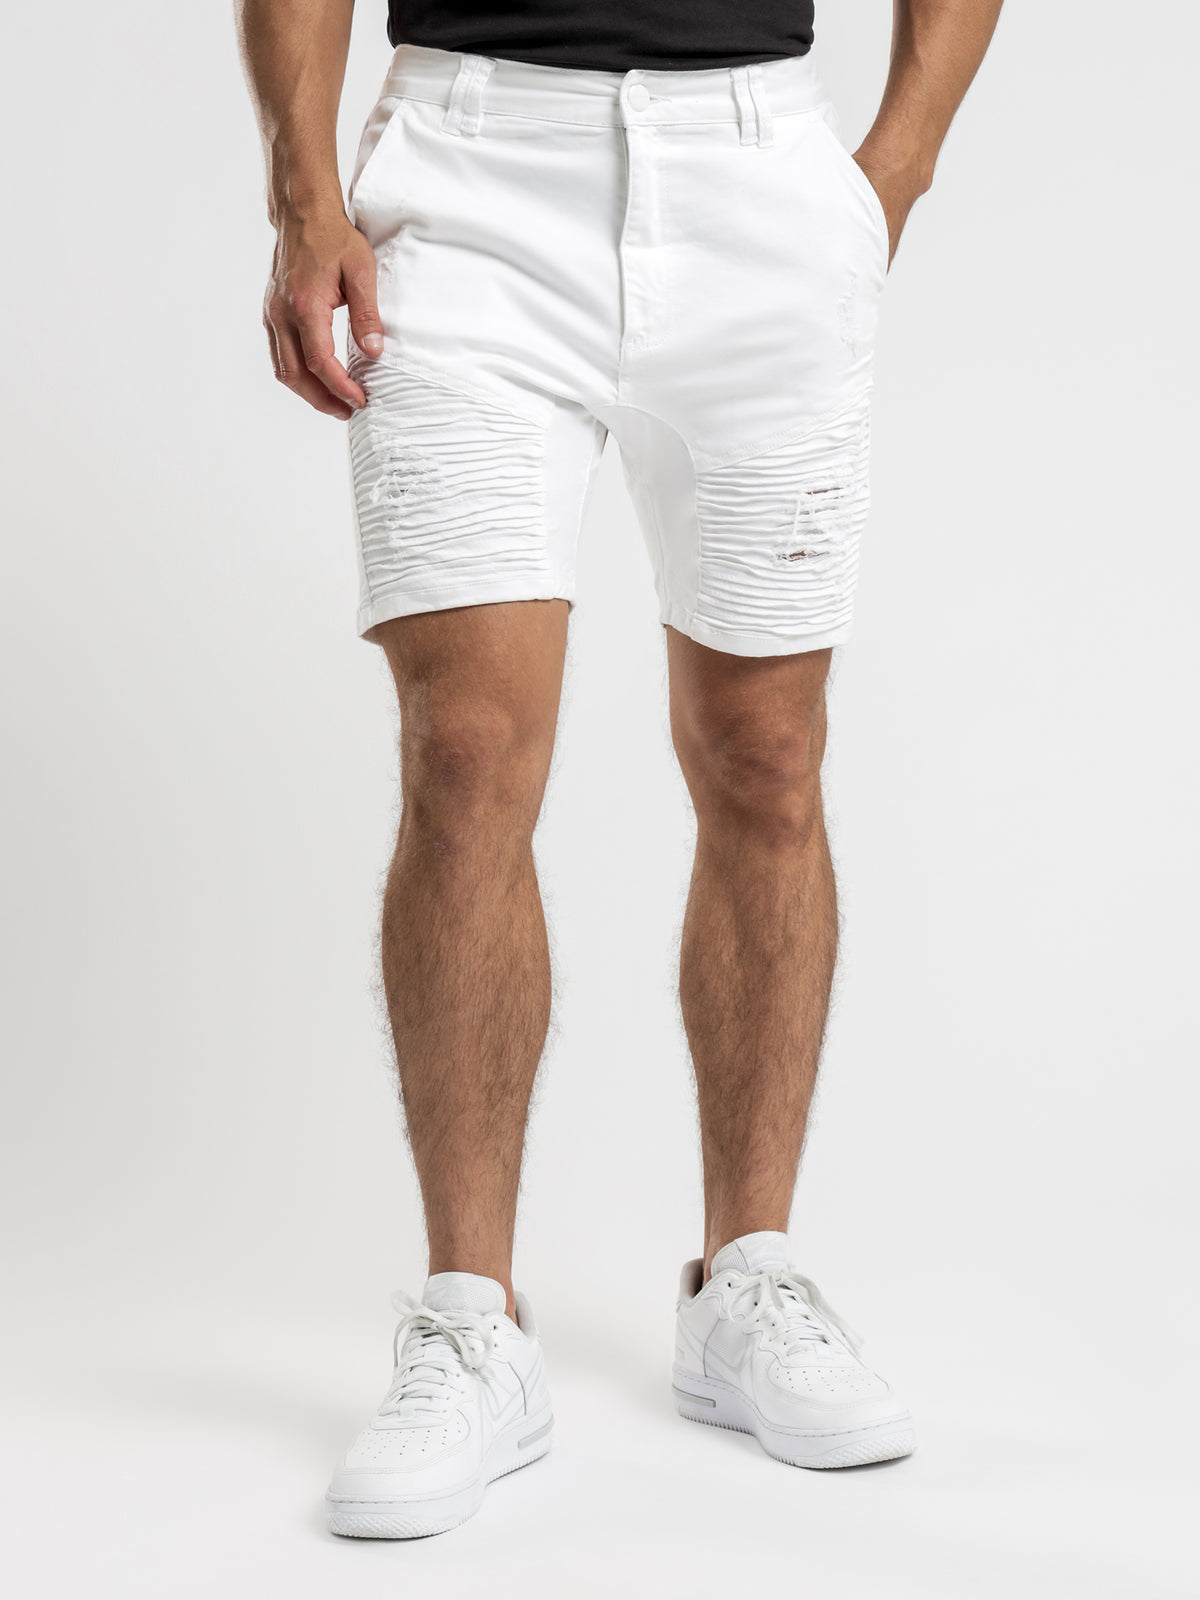 Destroyer Shorts in White Denim